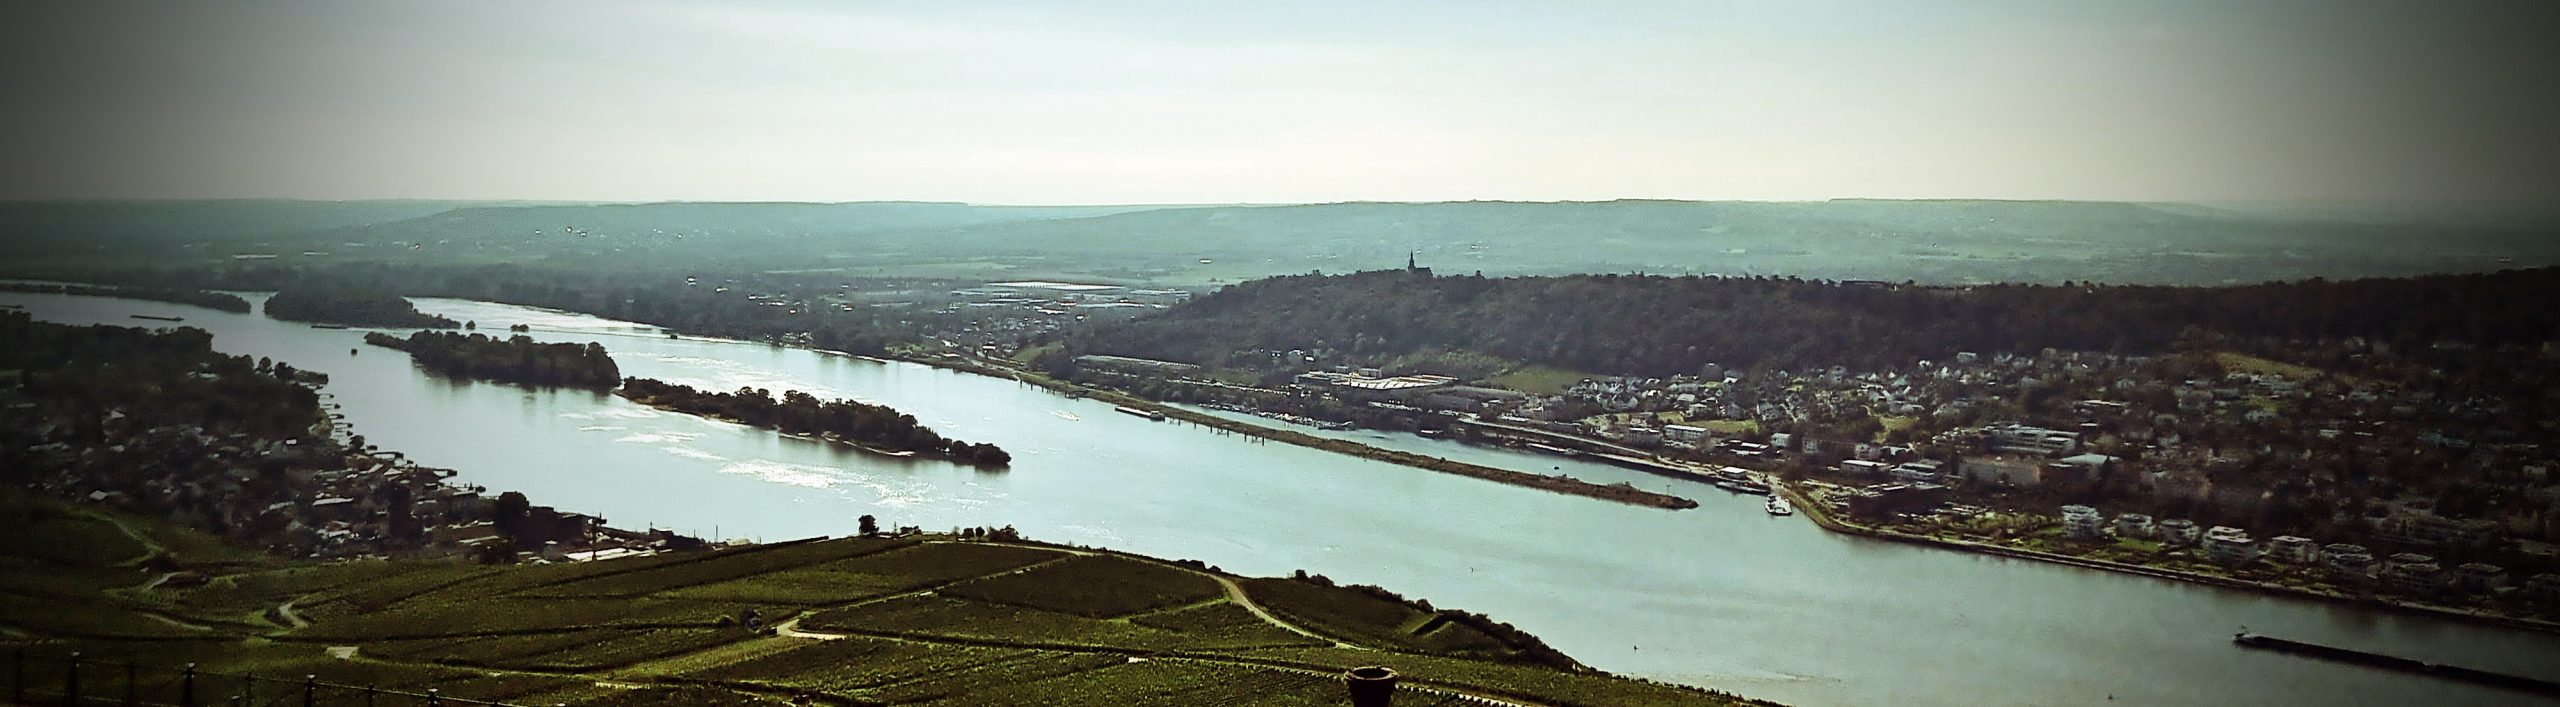 Blick auf den Rhein vom Niederwalddenkmal aus in Rüdesheim